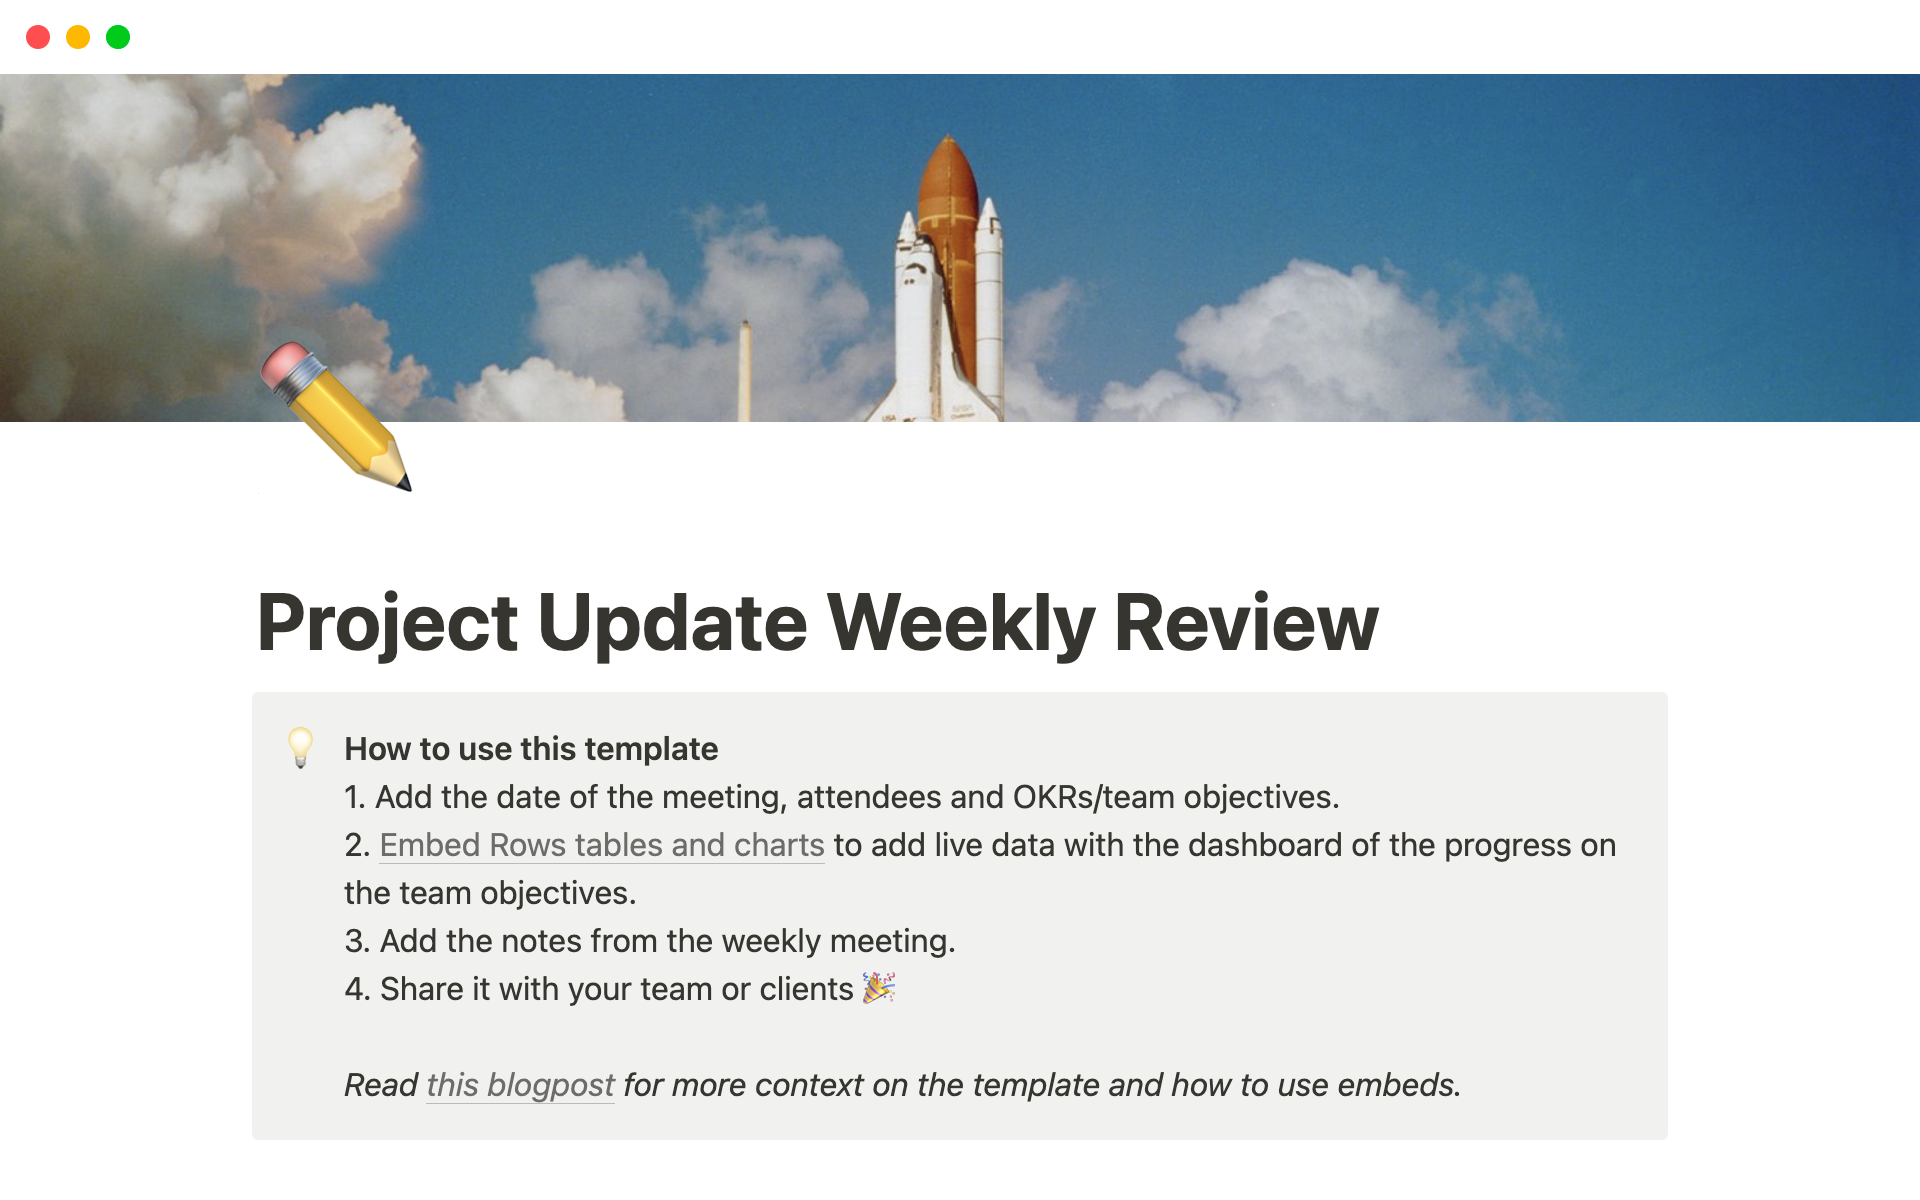 Uma prévia do modelo para Project Update Weekly Review